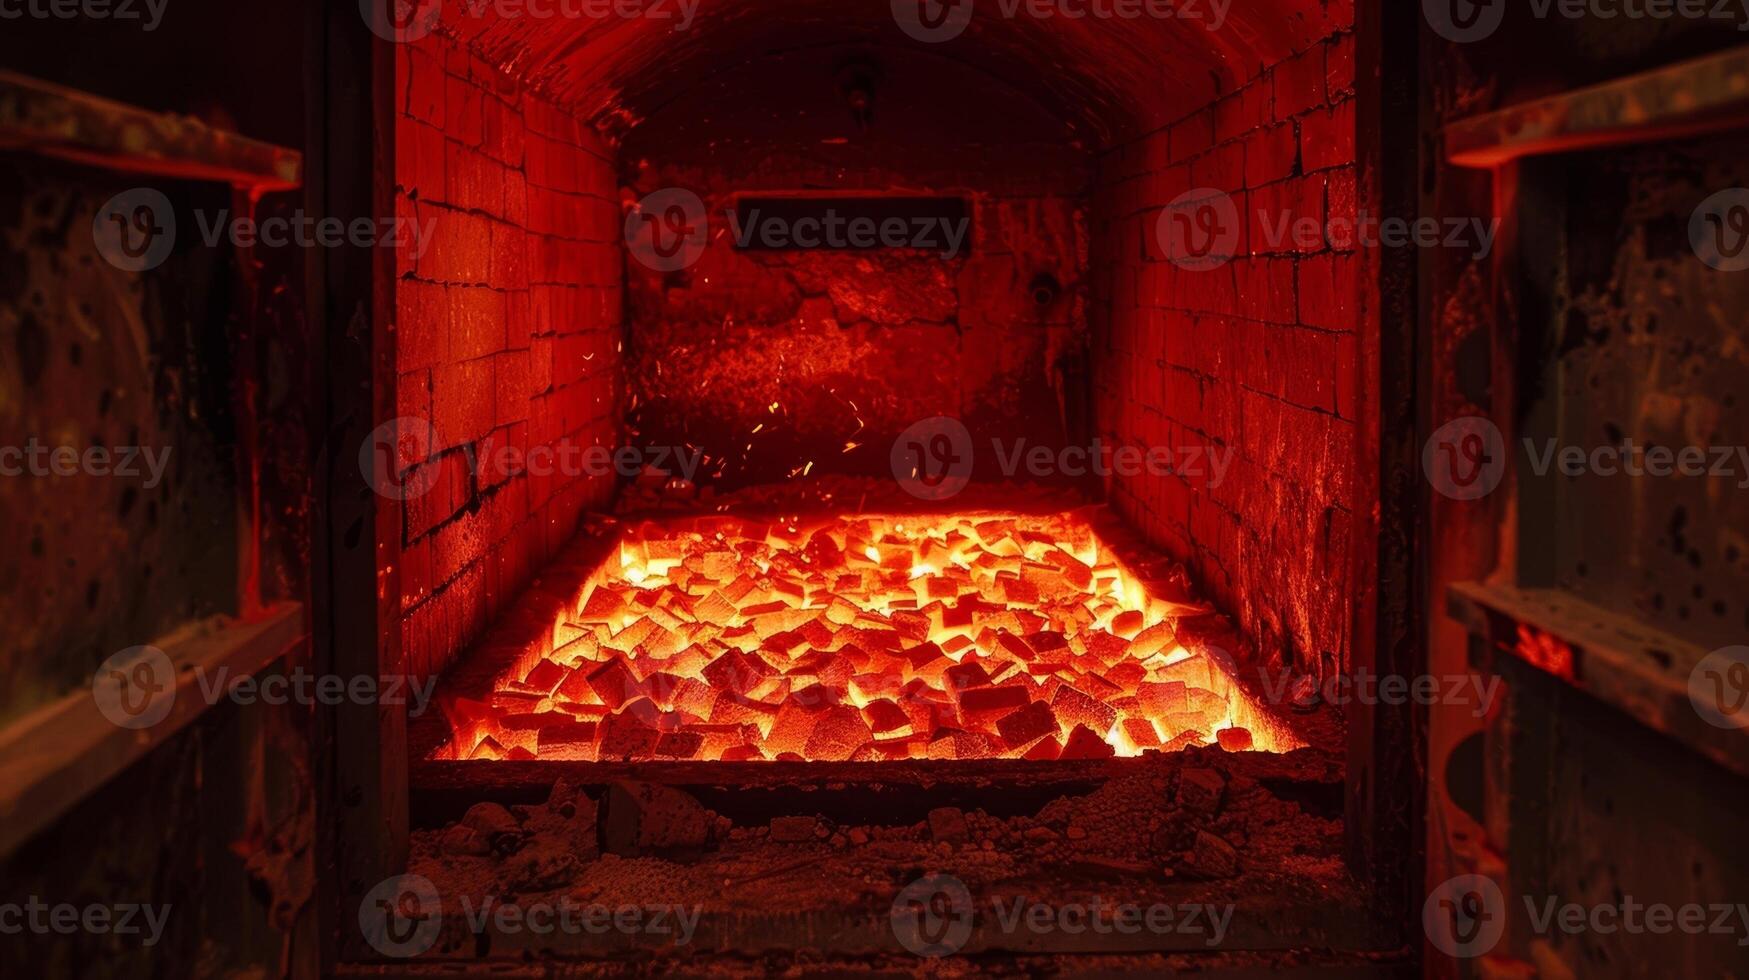 een oven gloeiend helder rood net zo het branden een partij van minutieus bewerkte porselein stukken. foto